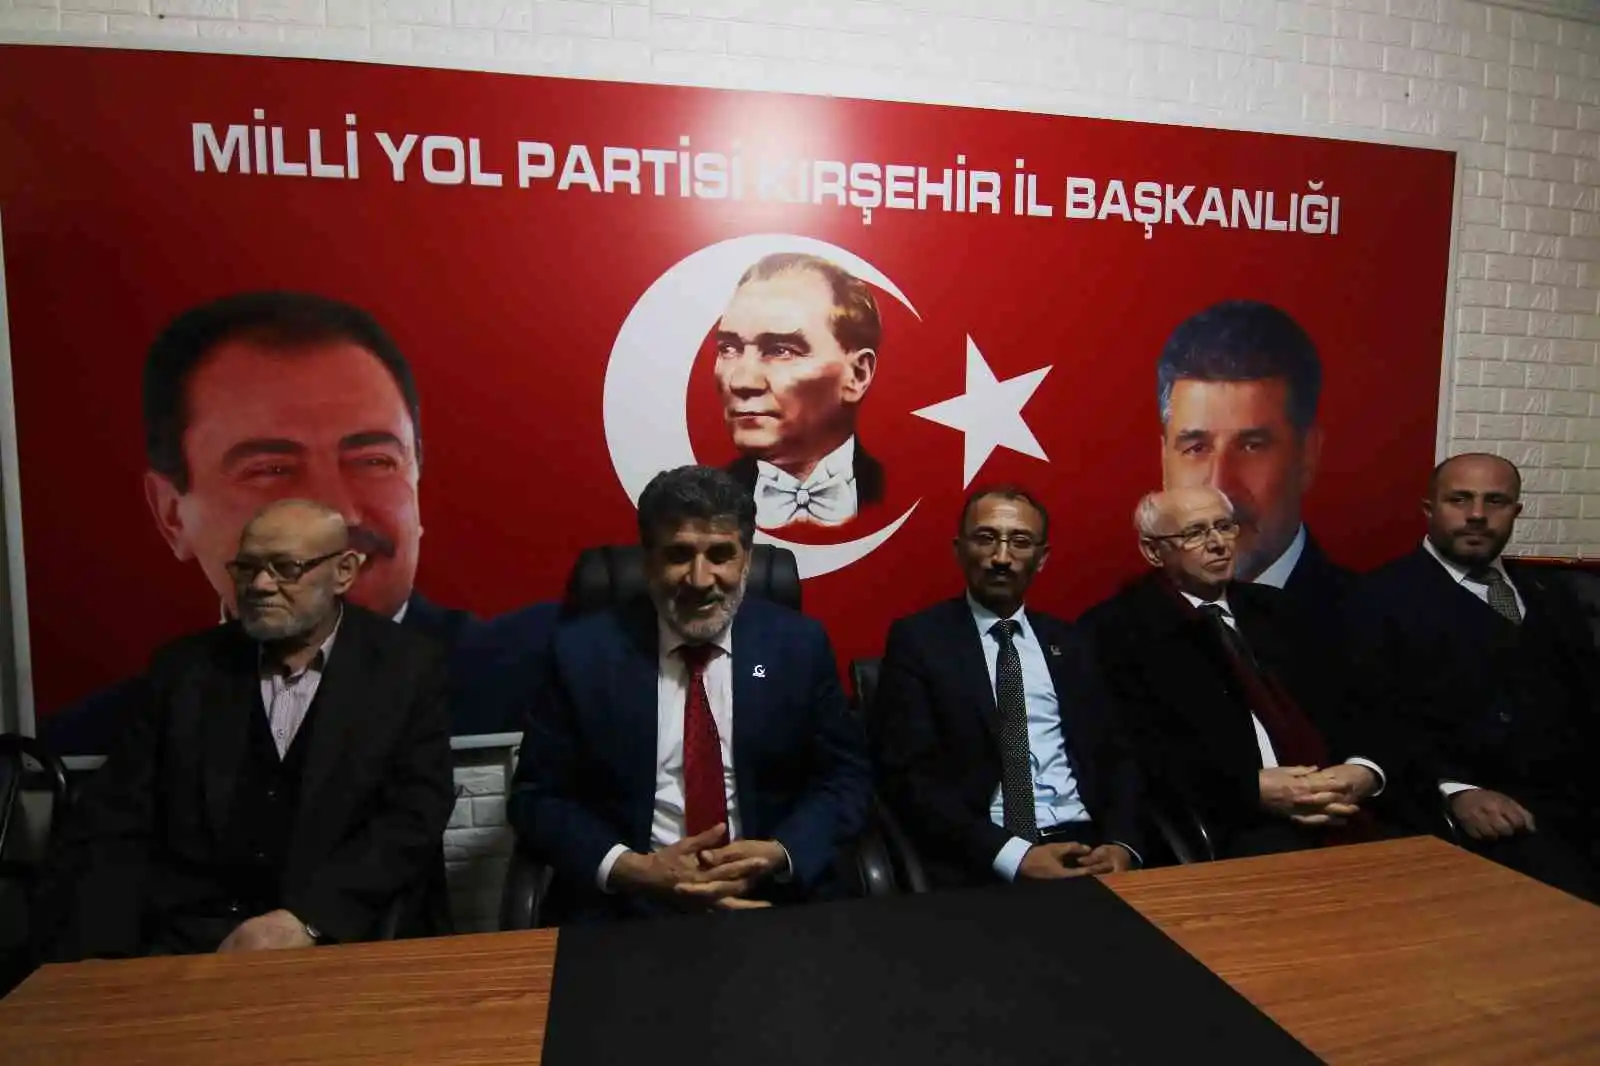 MYP'li Çayır: "Muhsin Yazıcıoğlu dosyası kapatılmak istenmektedir"
